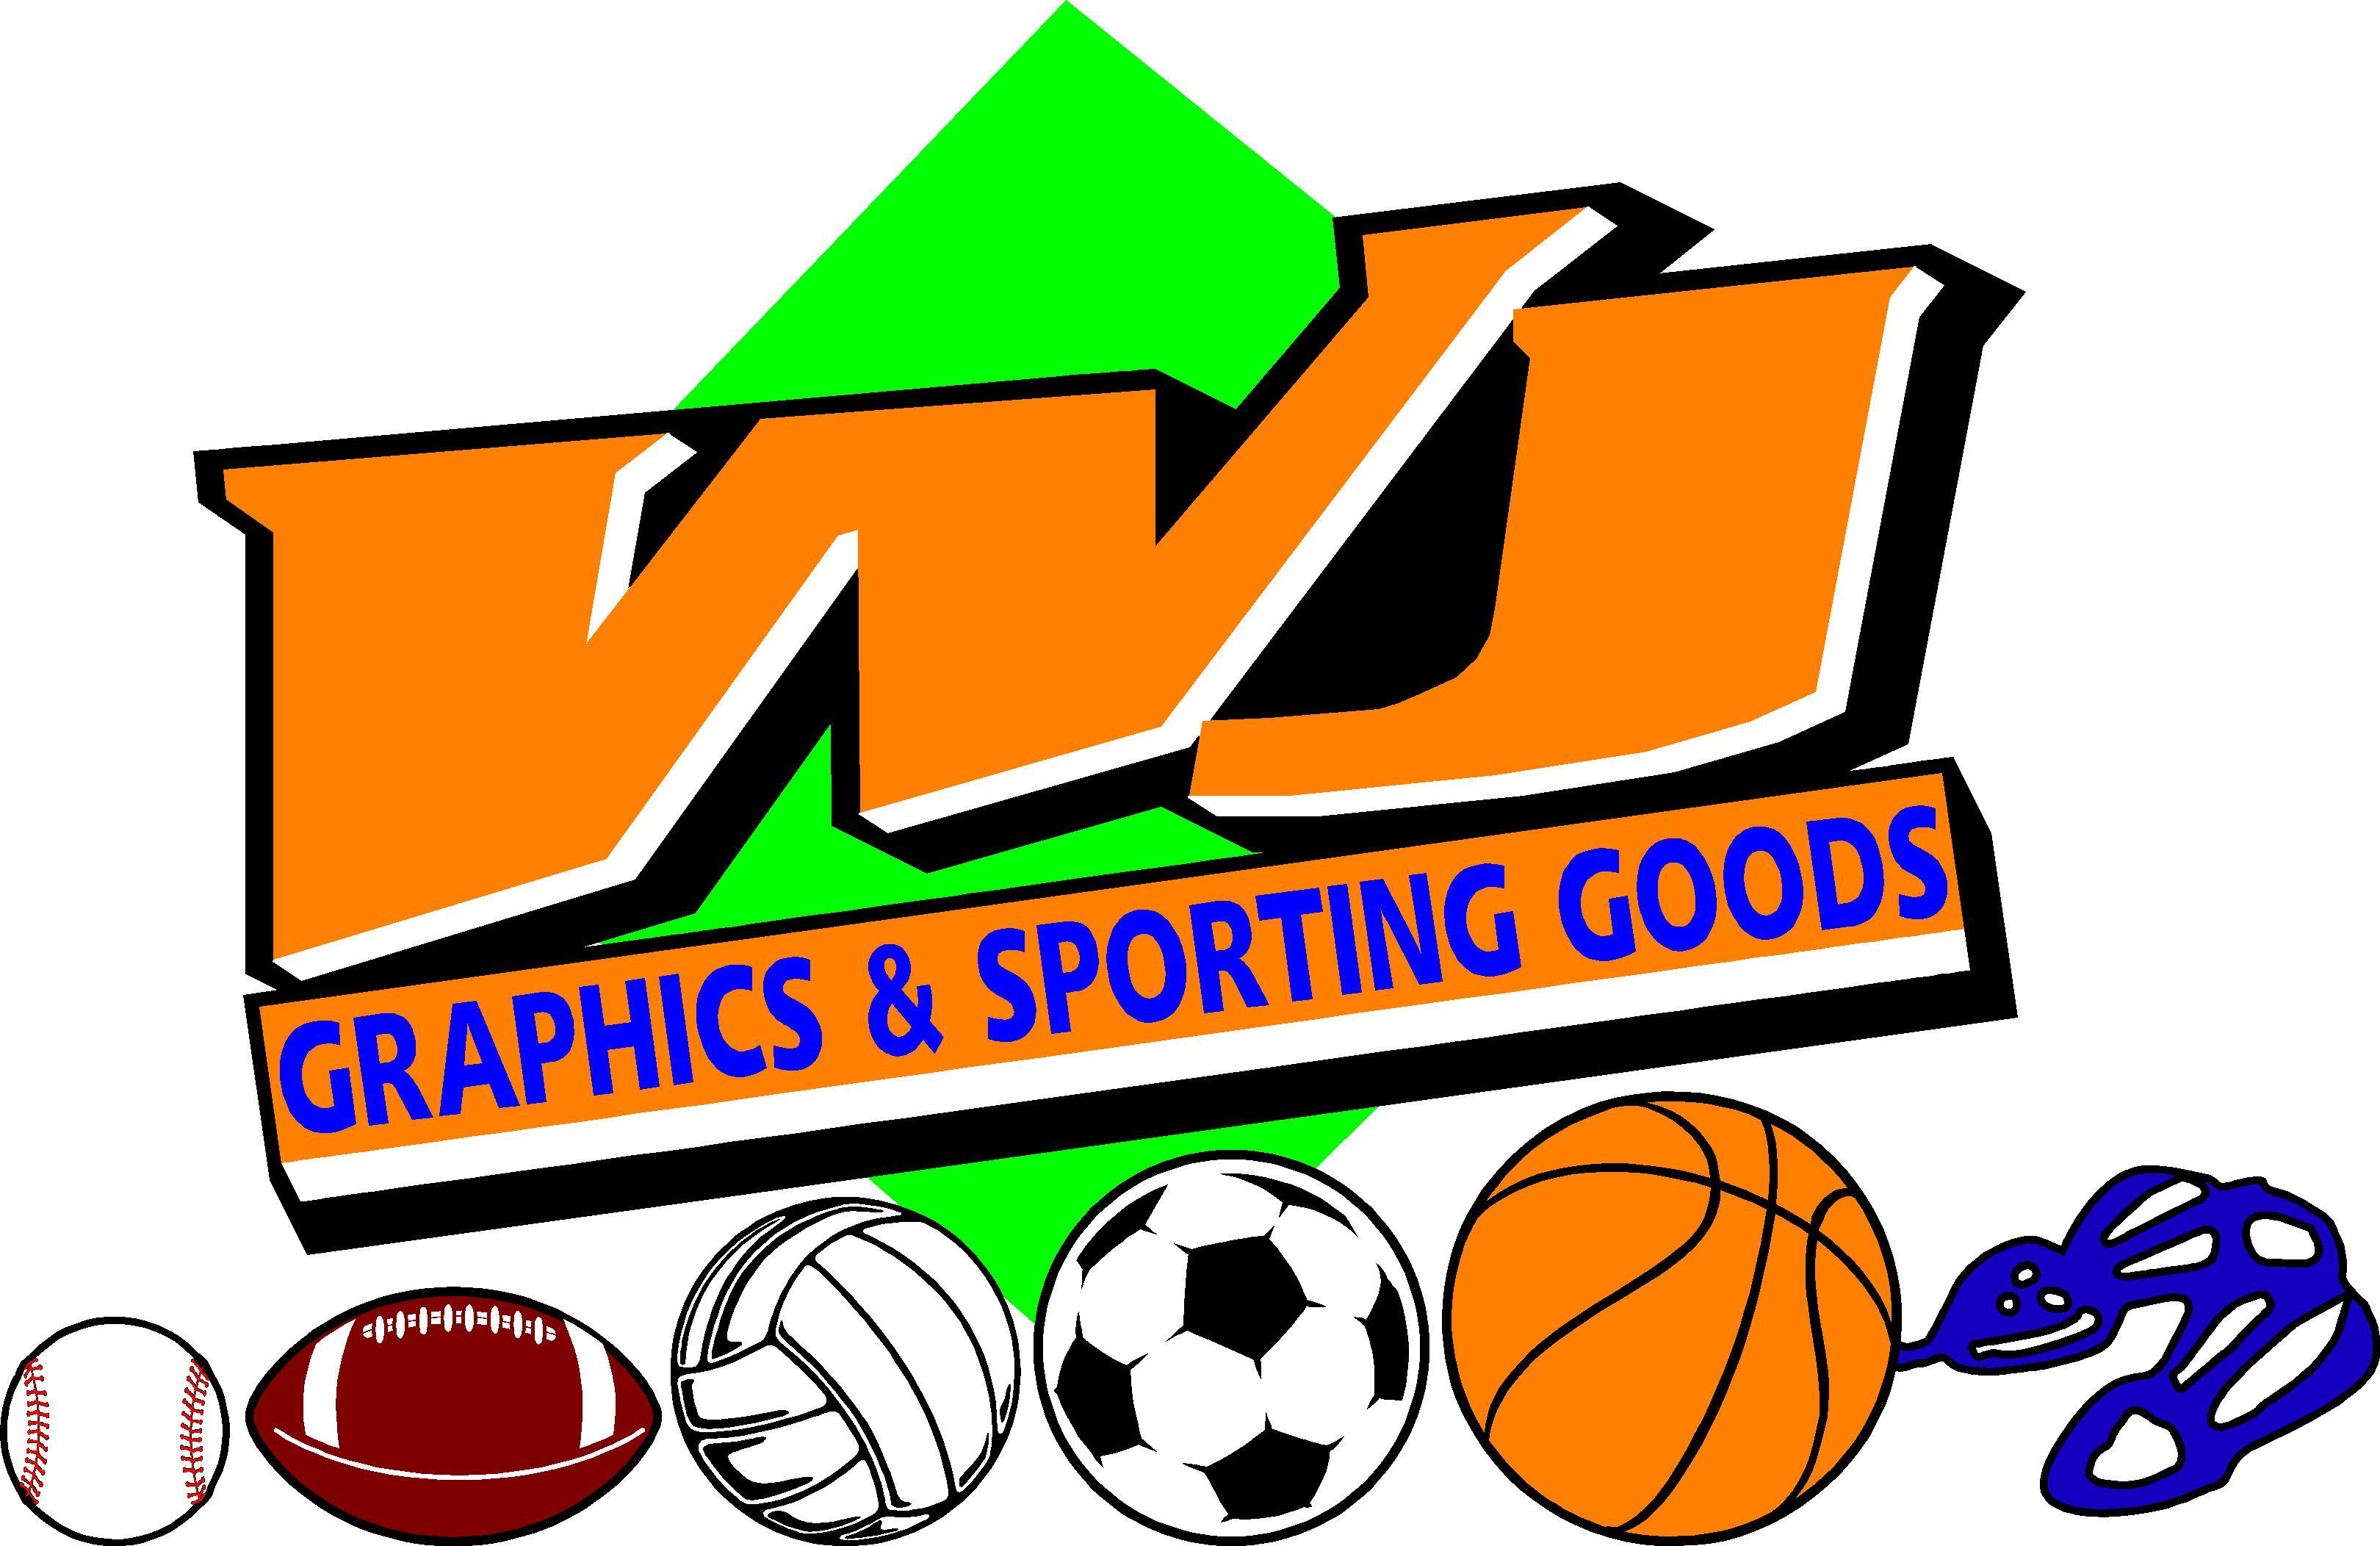 Sporting Goods Logo - WJ Graphics & Sporting Goods. Henry Dunn Insurance